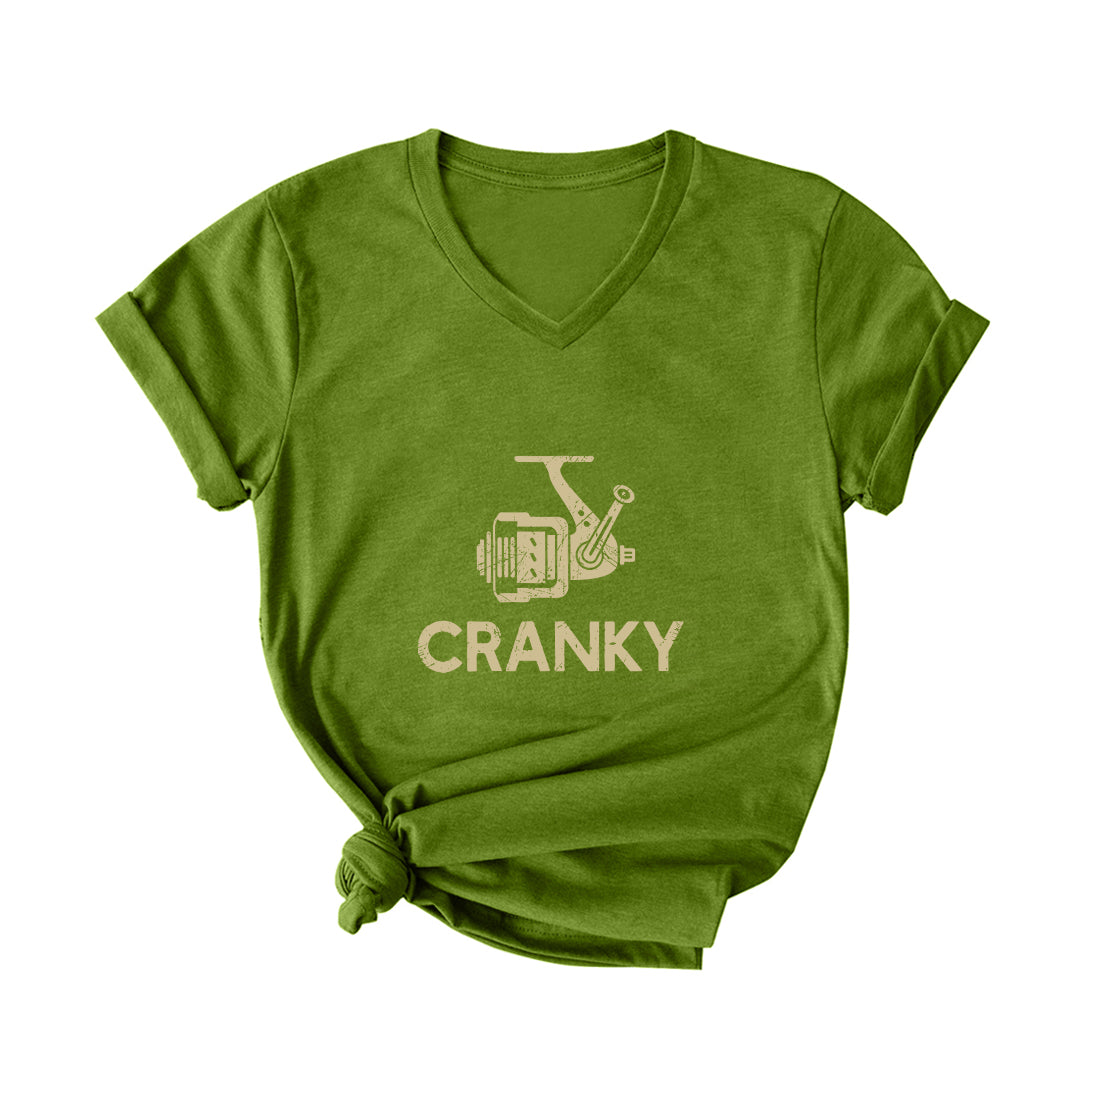 Cranky Fishing V Neck T-Shirt for Women